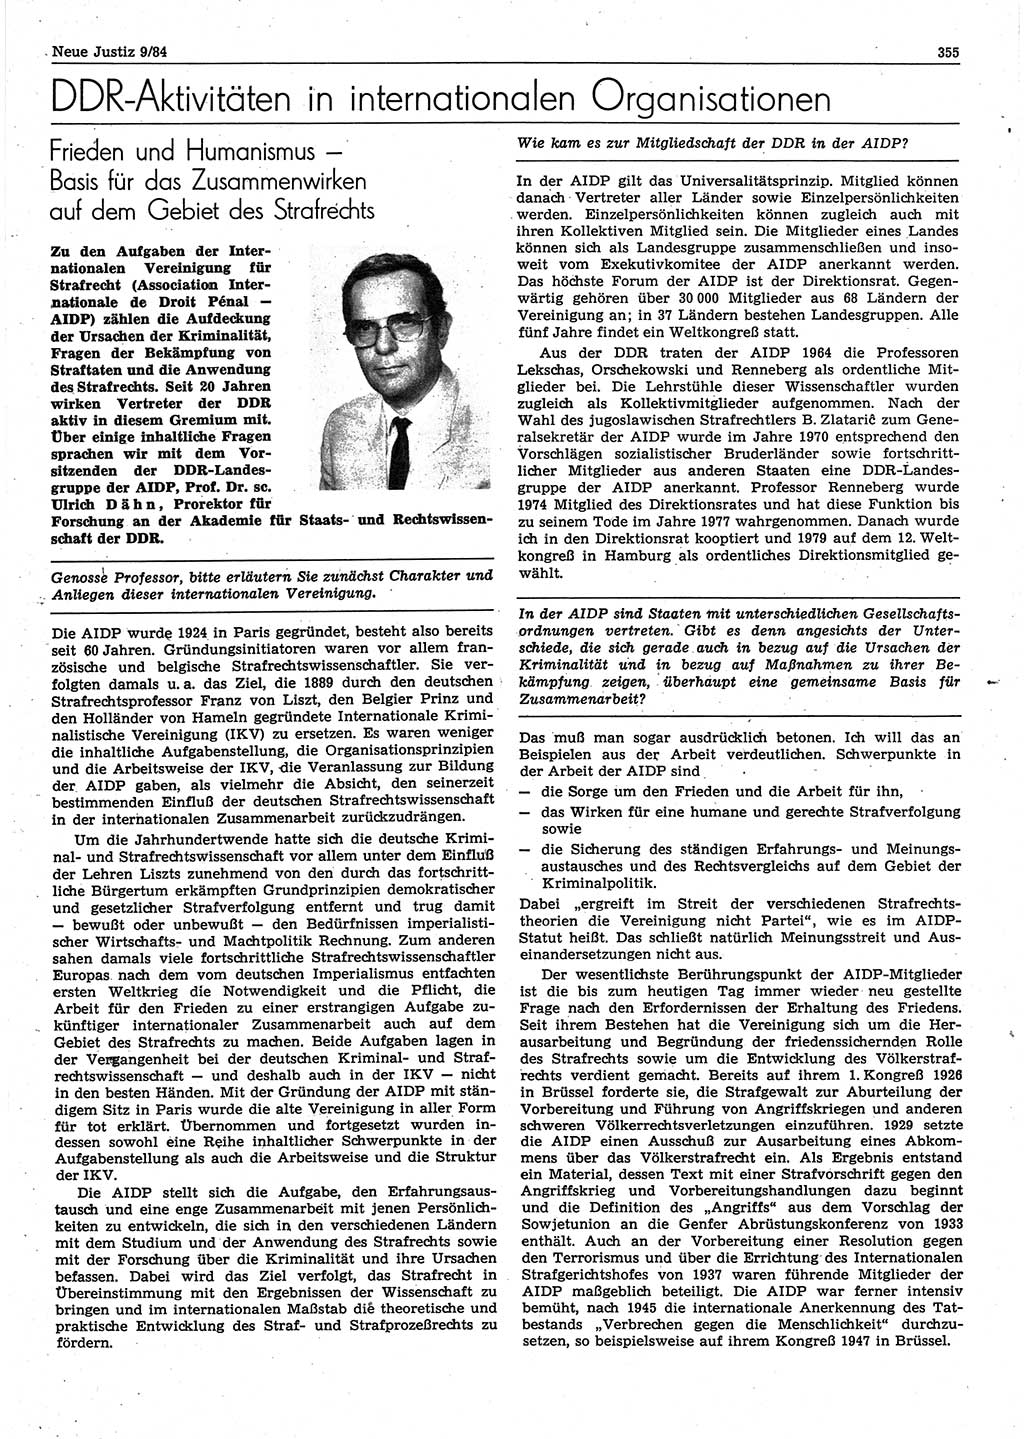 Neue Justiz (NJ), Zeitschrift für sozialistisches Recht und Gesetzlichkeit [Deutsche Demokratische Republik (DDR)], 38. Jahrgang 1984, Seite 355 (NJ DDR 1984, S. 355)